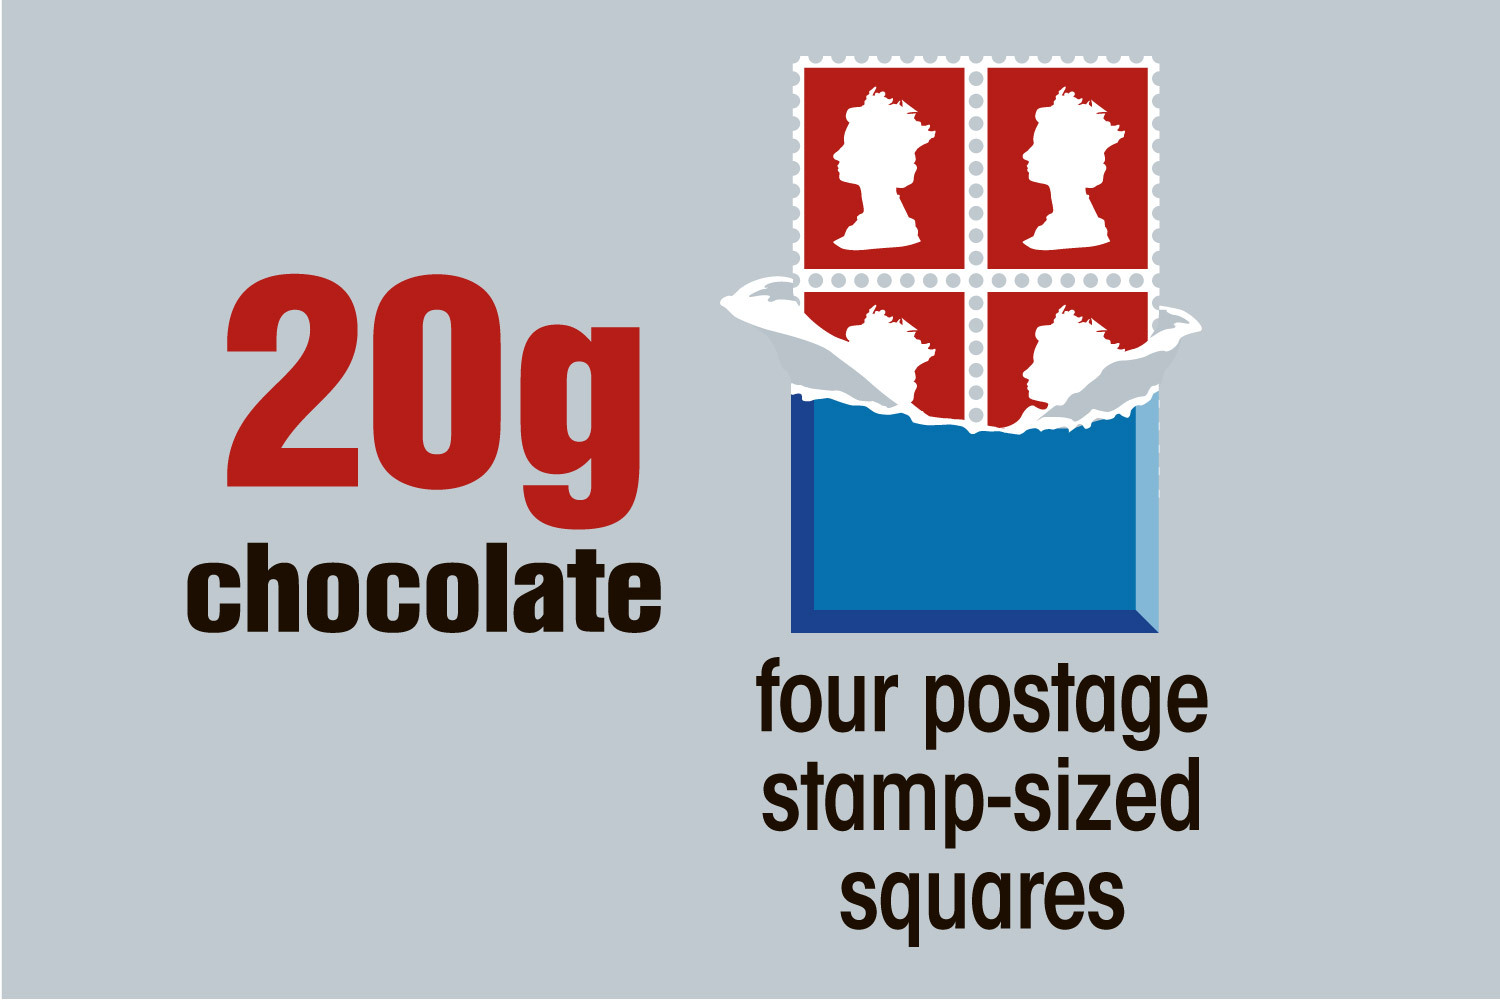 Und Sie sollten nur 20 g Schokolade haben – die Größe von vier Briefmarkengroßen Quadraten